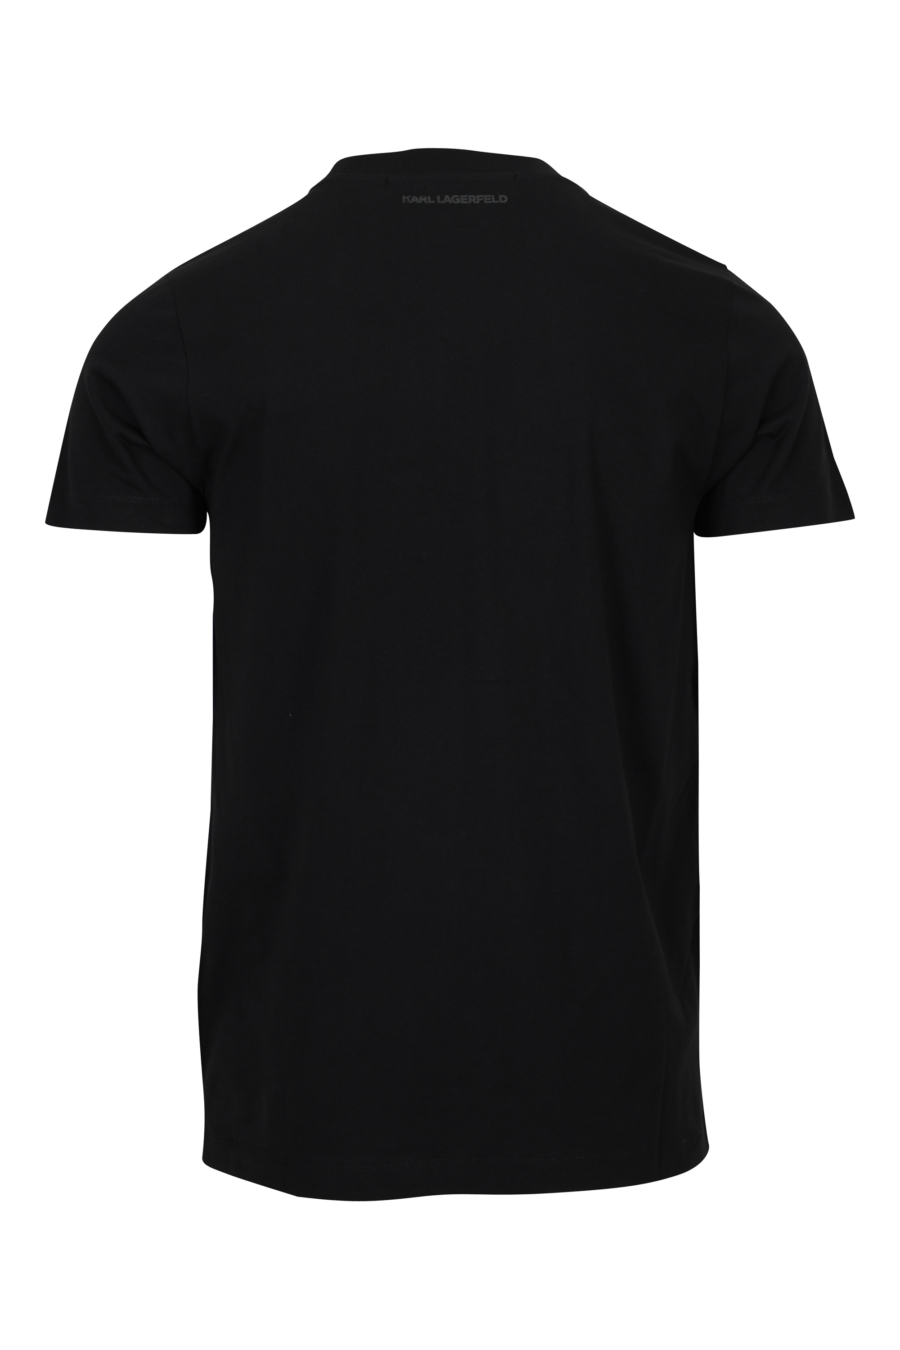 Camiseta negra con maxilogo monocromático centrado - 4062226962155 1